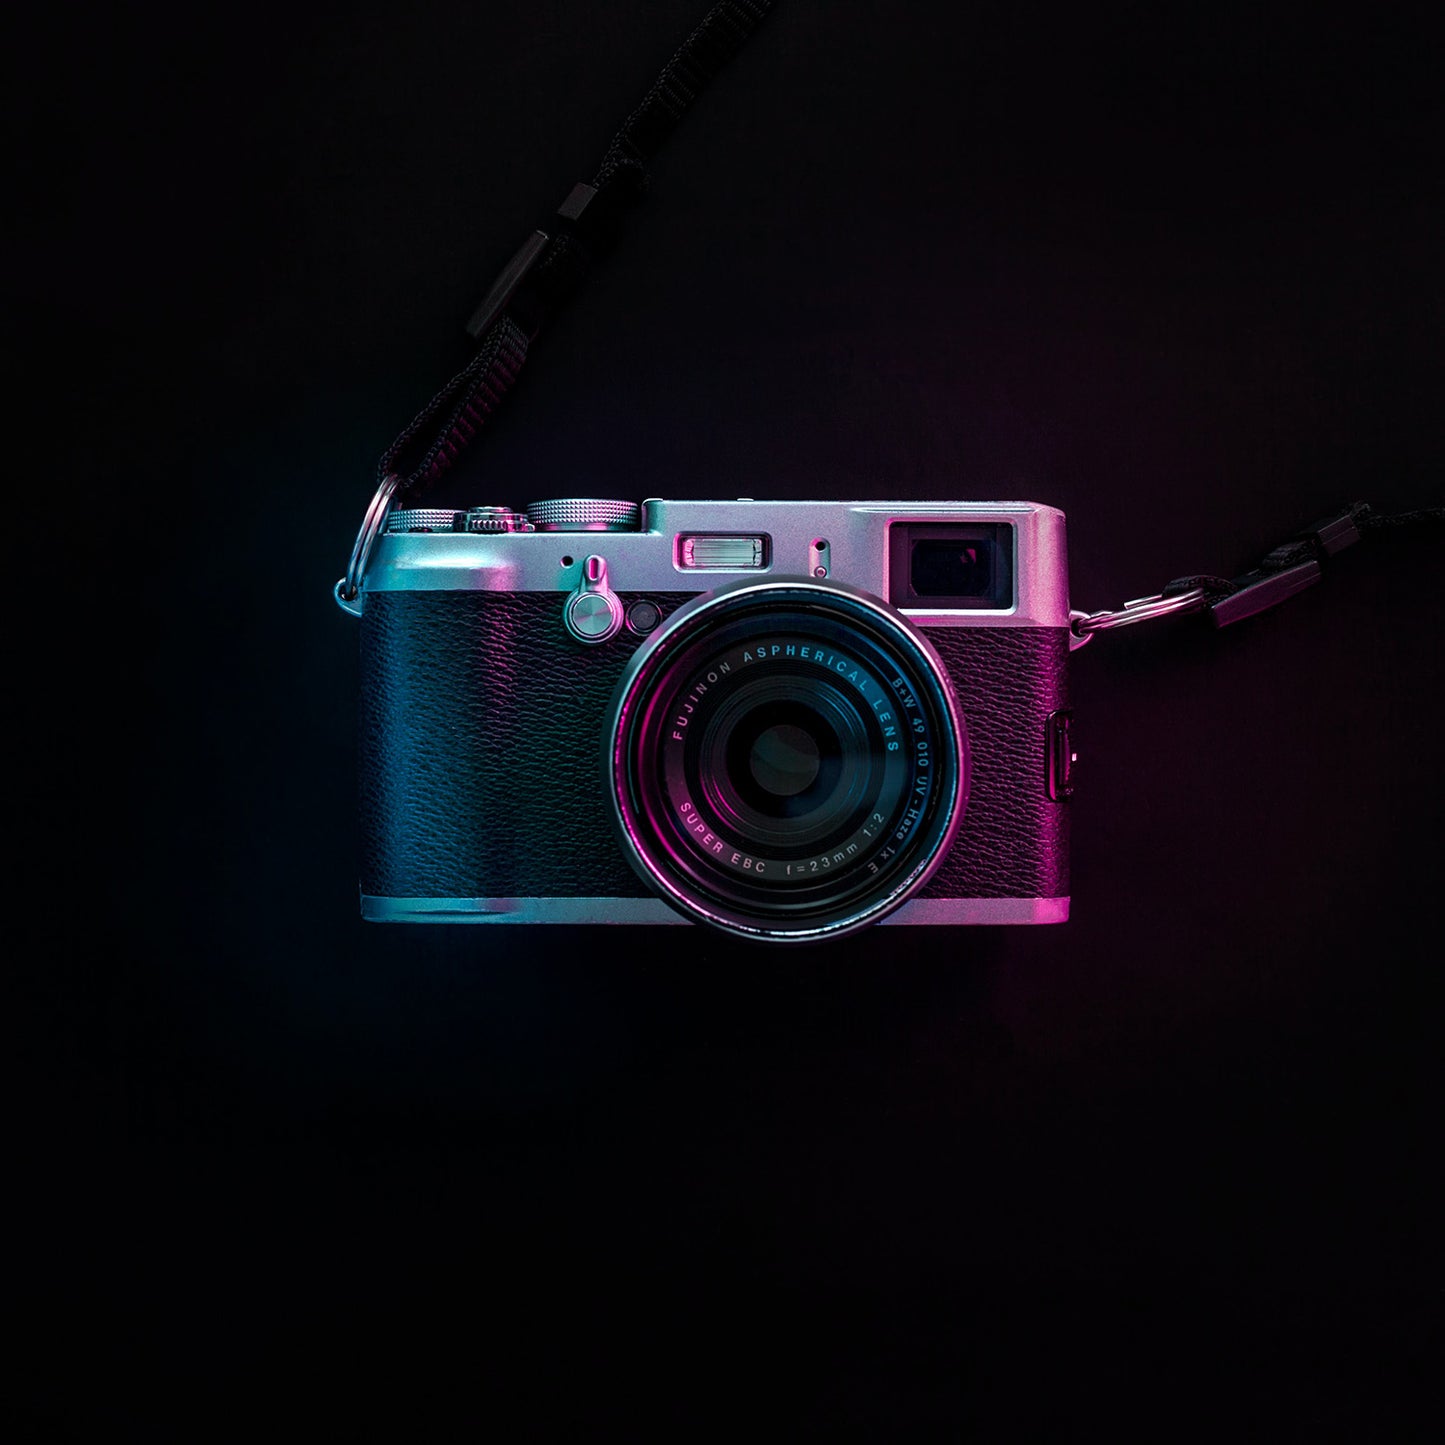 PerfeFilm 免費試用! 適用於所有相機和模擬膠片的Lightroom 色彩描述檔。